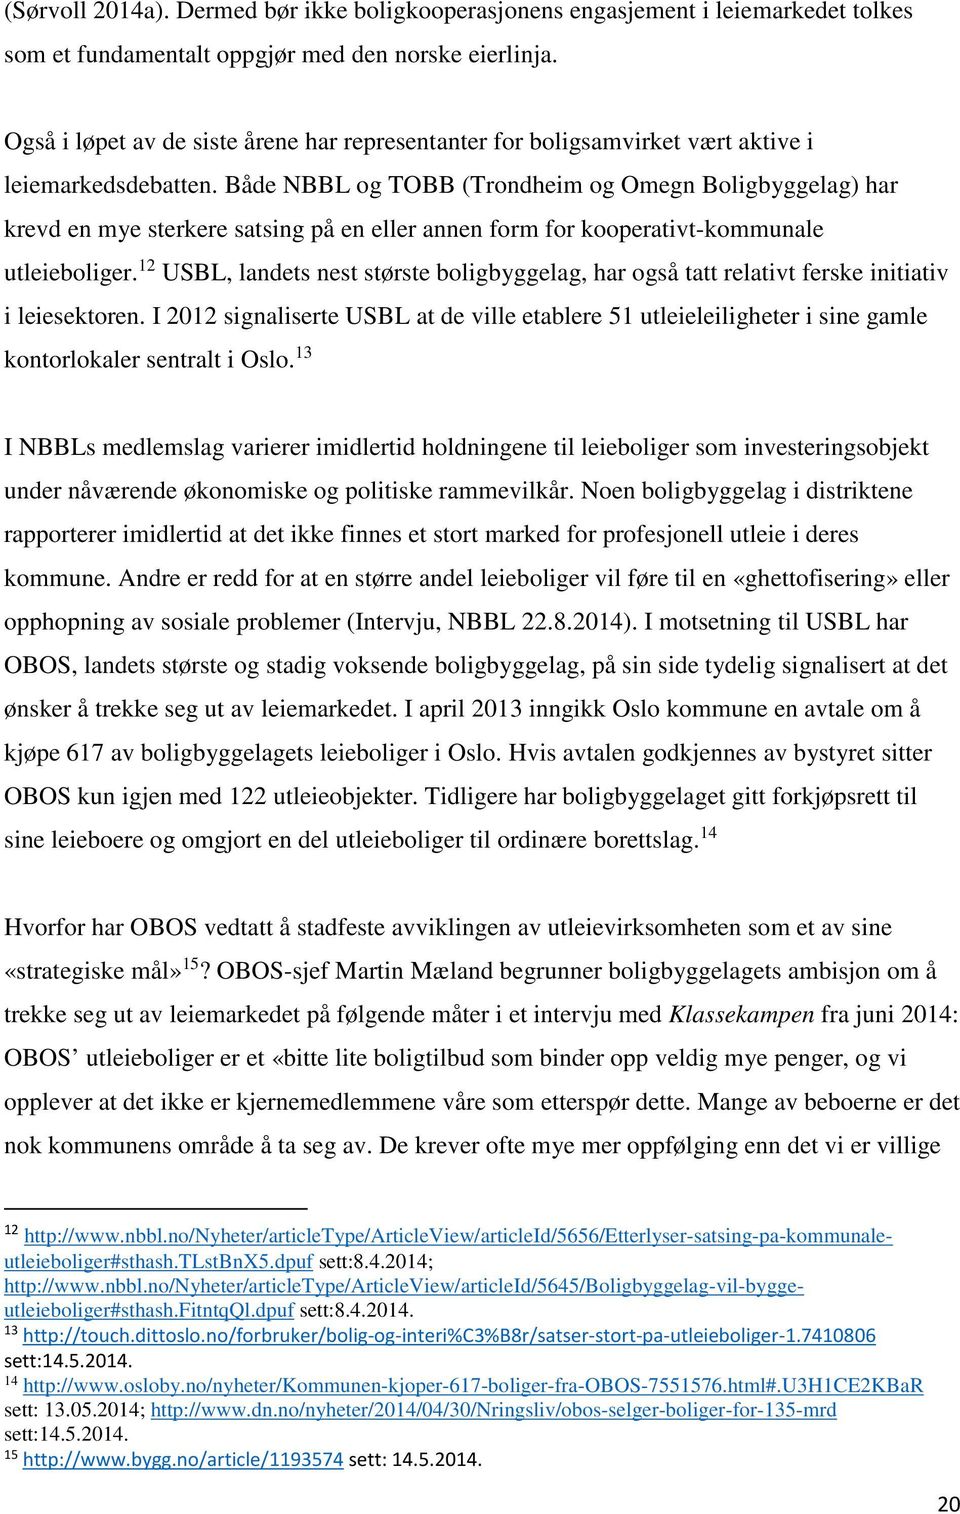 Både NBBL og TOBB (Trondheim og Omegn Boligbyggelag) har krevd en mye sterkere satsing på en eller annen form for kooperativt-kommunale utleieboliger.